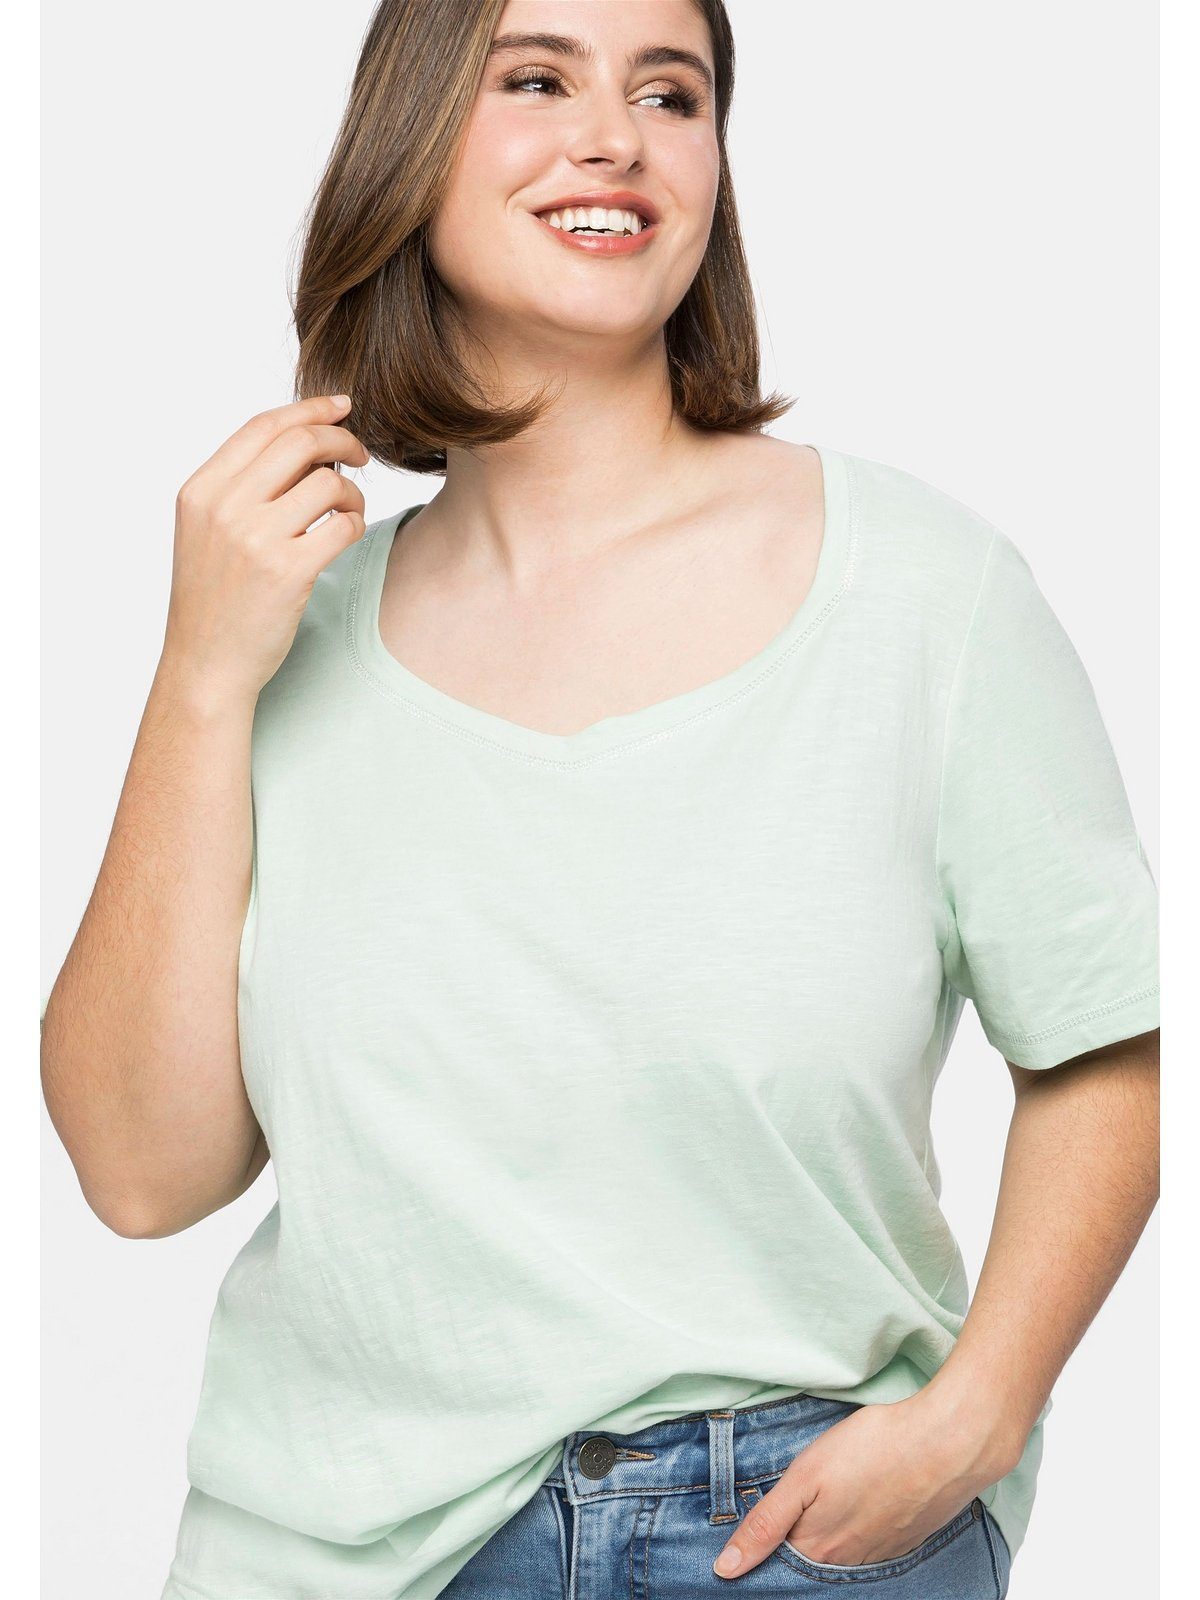 Sheego T-Shirt Silberfarbenen Ziernähten, mit Größen Große Ausschnitt und an Ziernähte silberfarbenen Ärmel